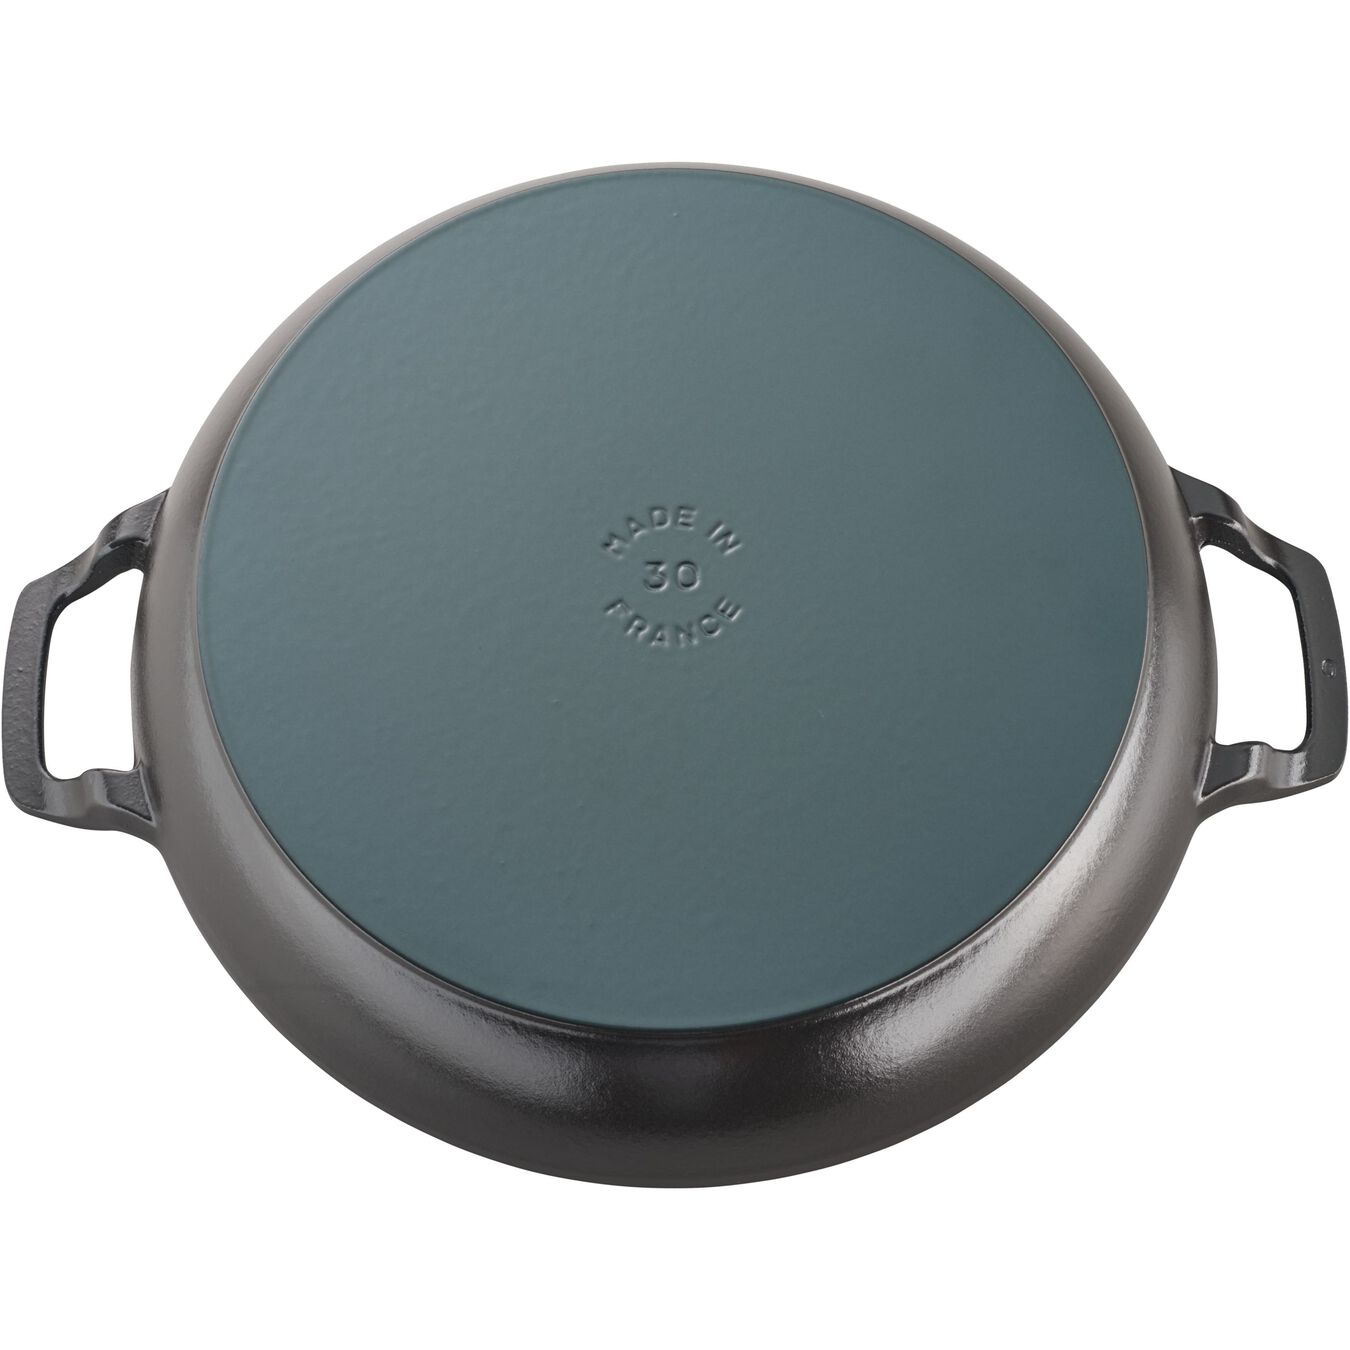 3.25 l cast iron round Saute pan, black,,large 3